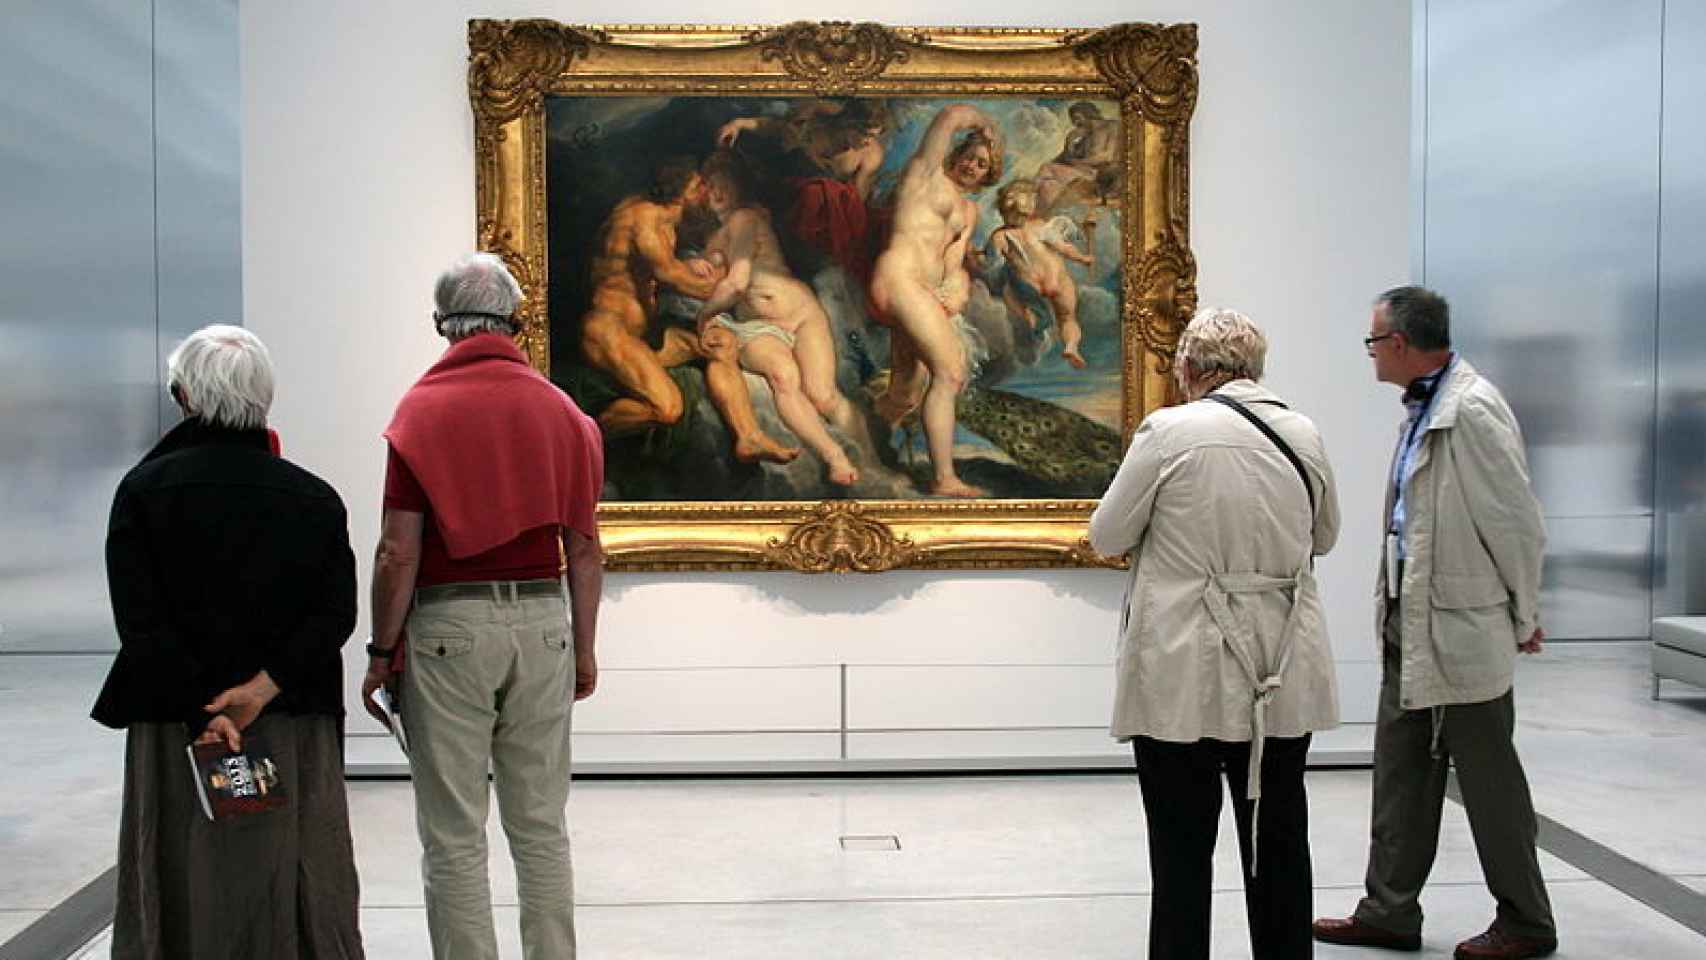 Ixion rey de los lapitas engañados por Juno, famoso cuadro de Peter Paul Rubens, en su exhibición temporal en Lens.